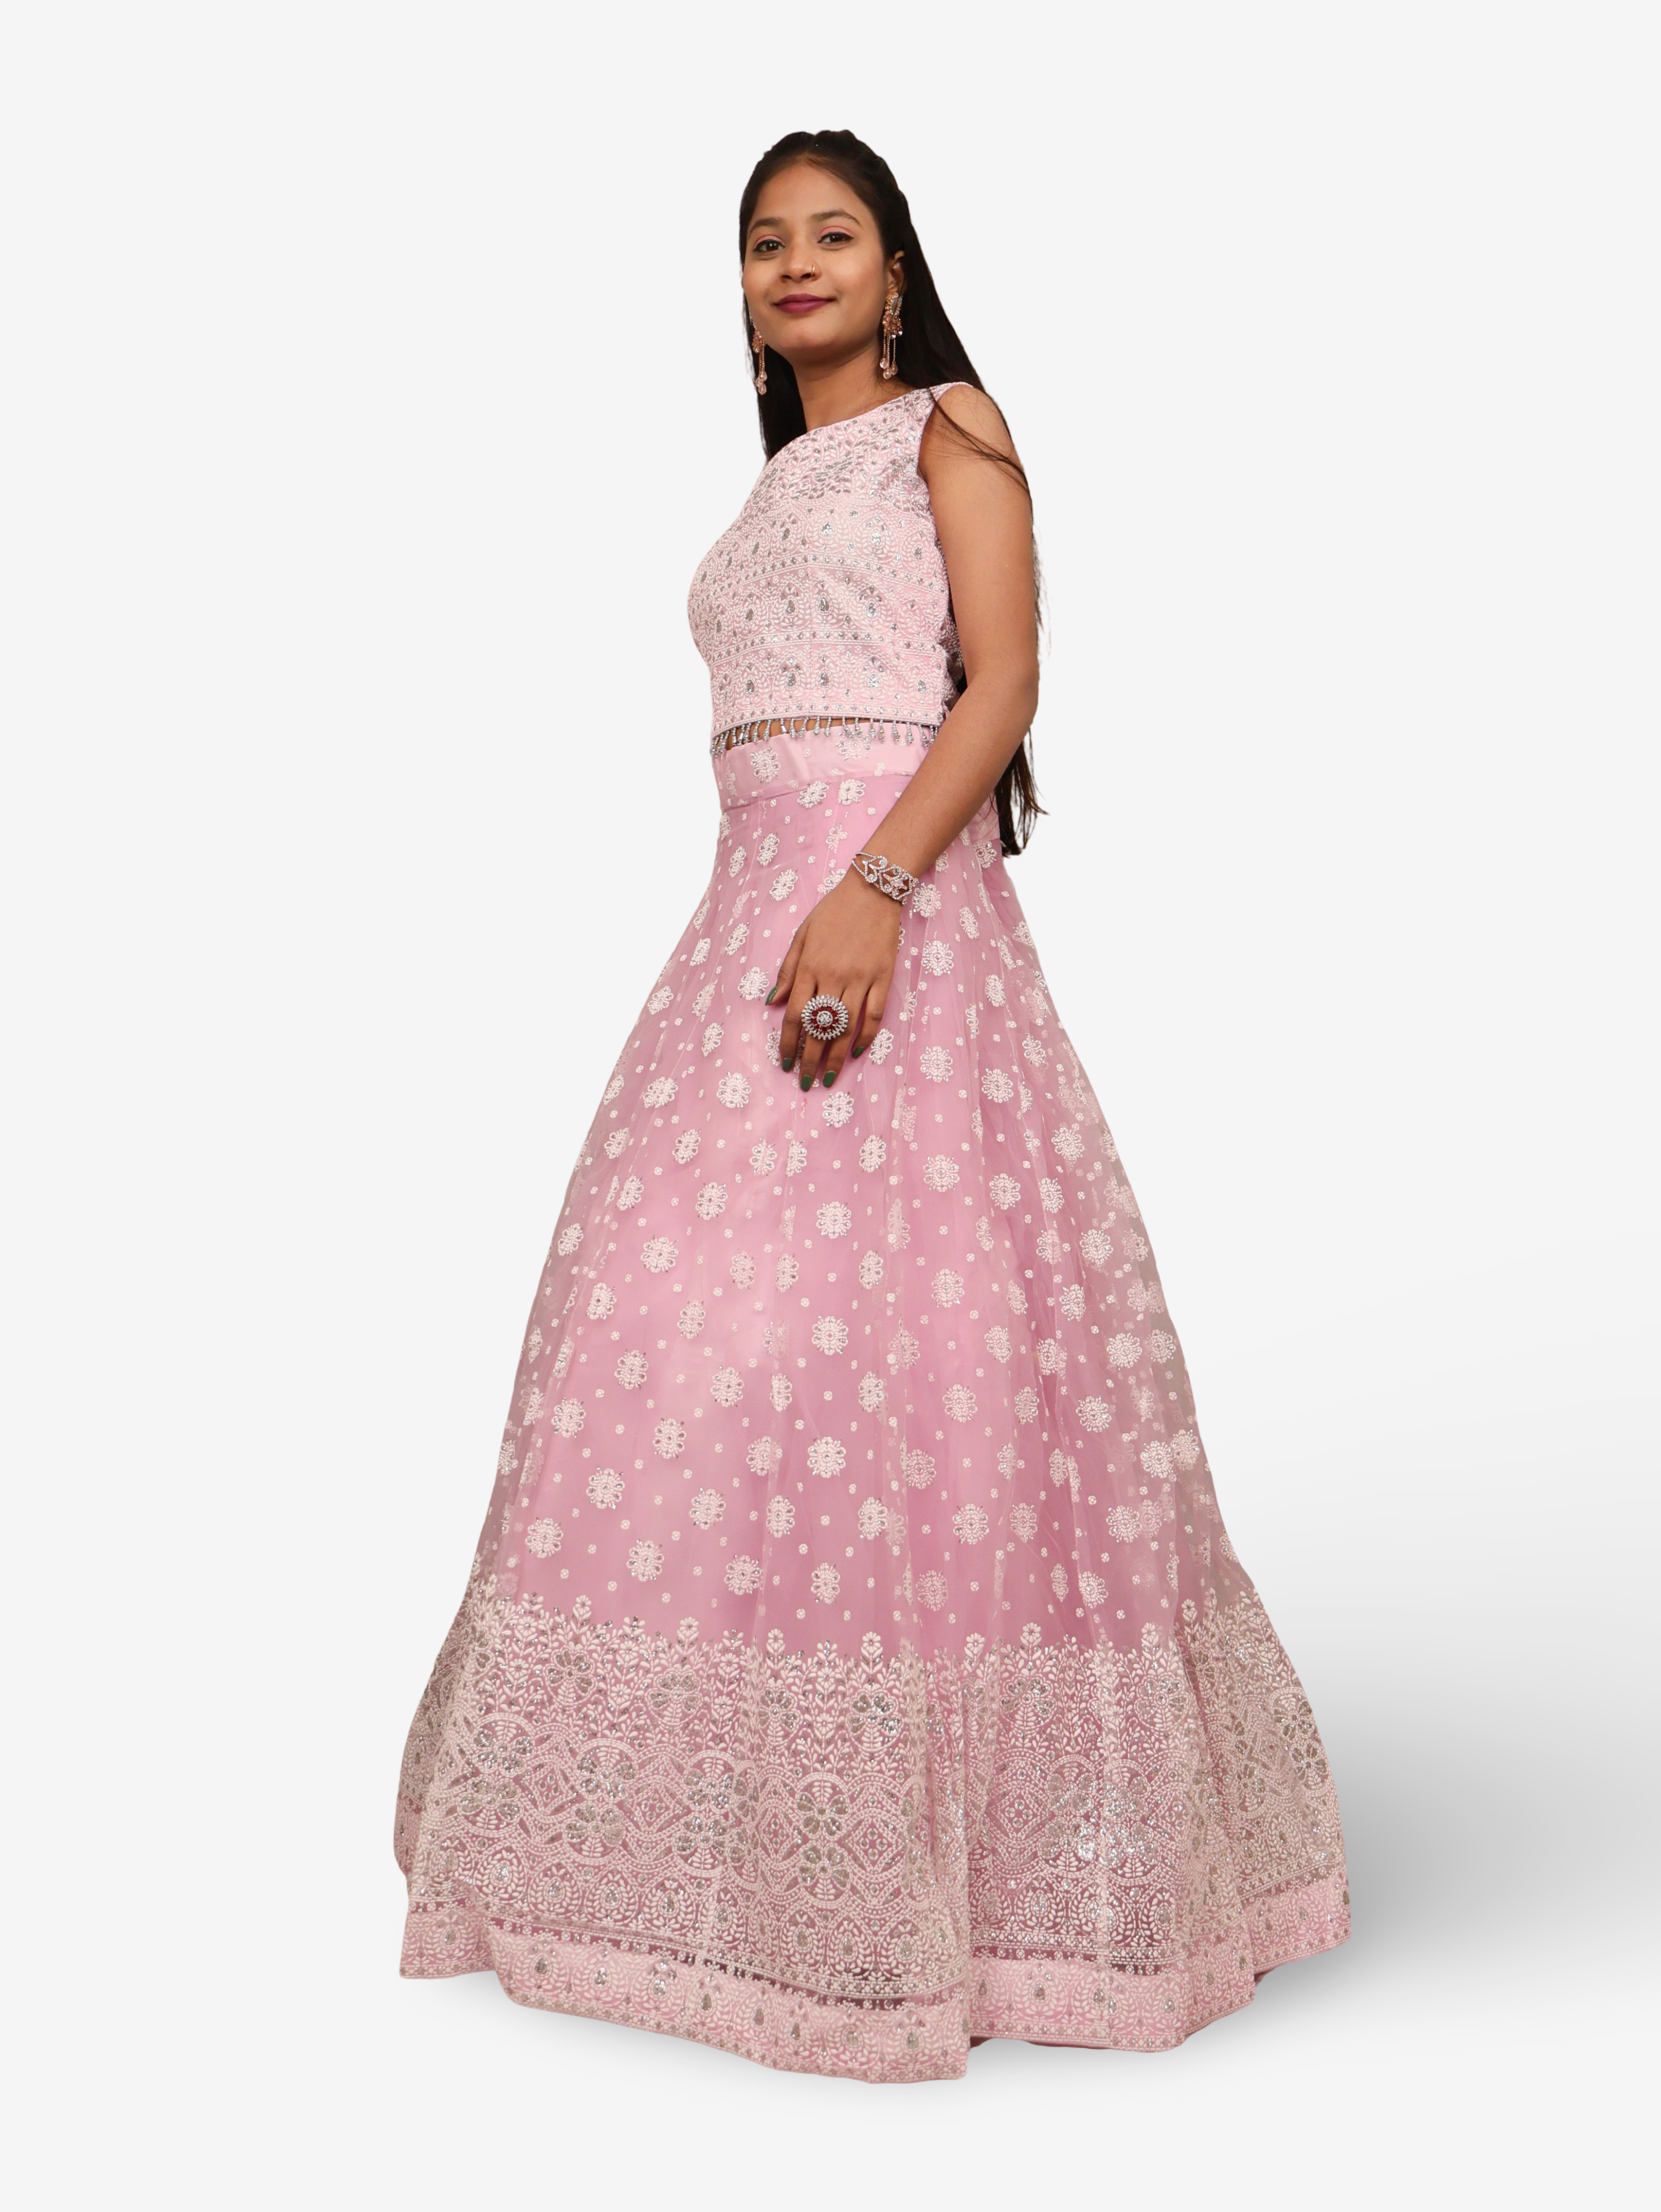 Embellished Flared Lehenga Choli Set with Dupatta by Shreekama Pink Designer Lehenga for Party Festival Wedding Occasion in Noida